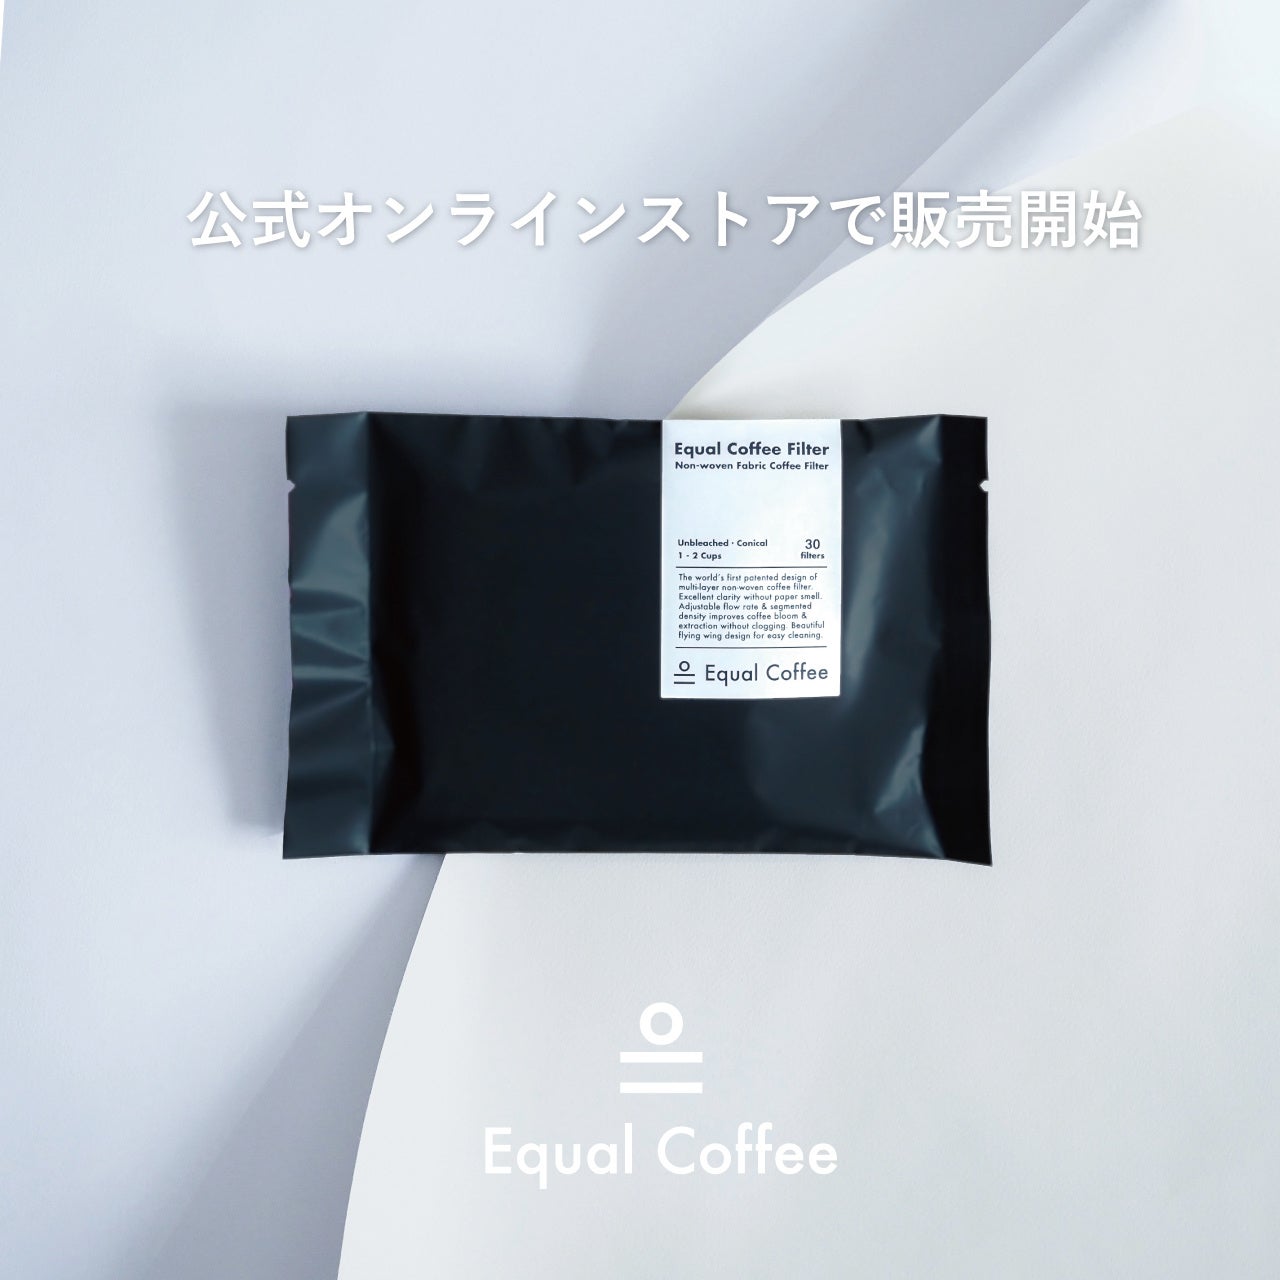 『紙ではない』美しいコーヒーフィルターが登場。『Equal Coffee Filter イコール・コーヒー・フィルター』。...